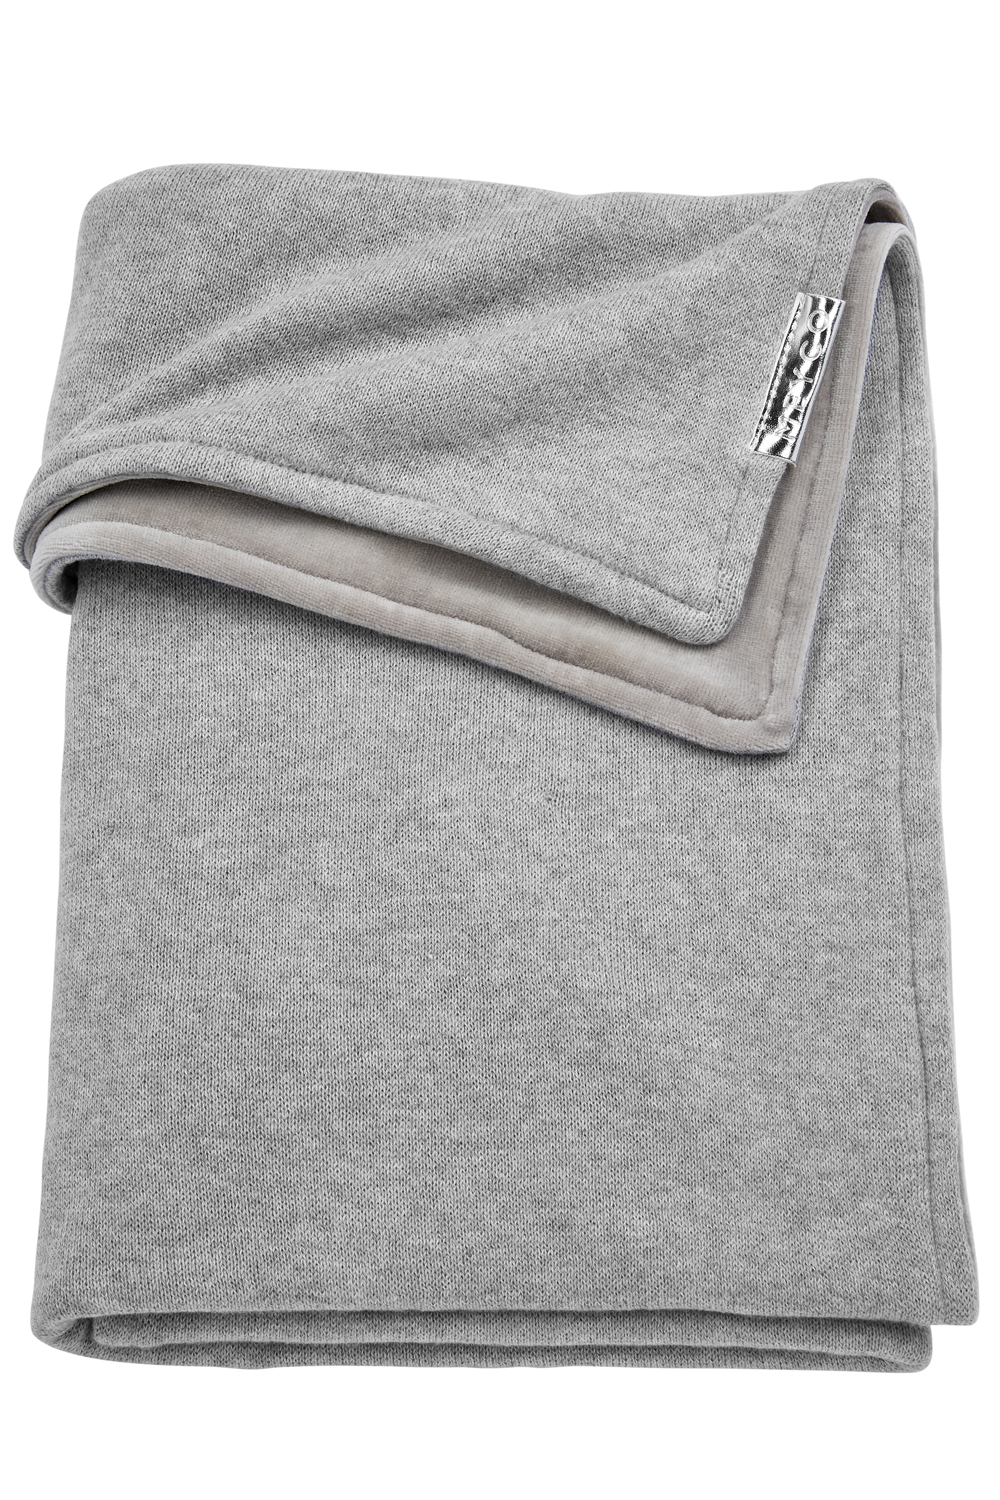 Ledikant deken Knit Basic velvet - grey melange - 100x150cm